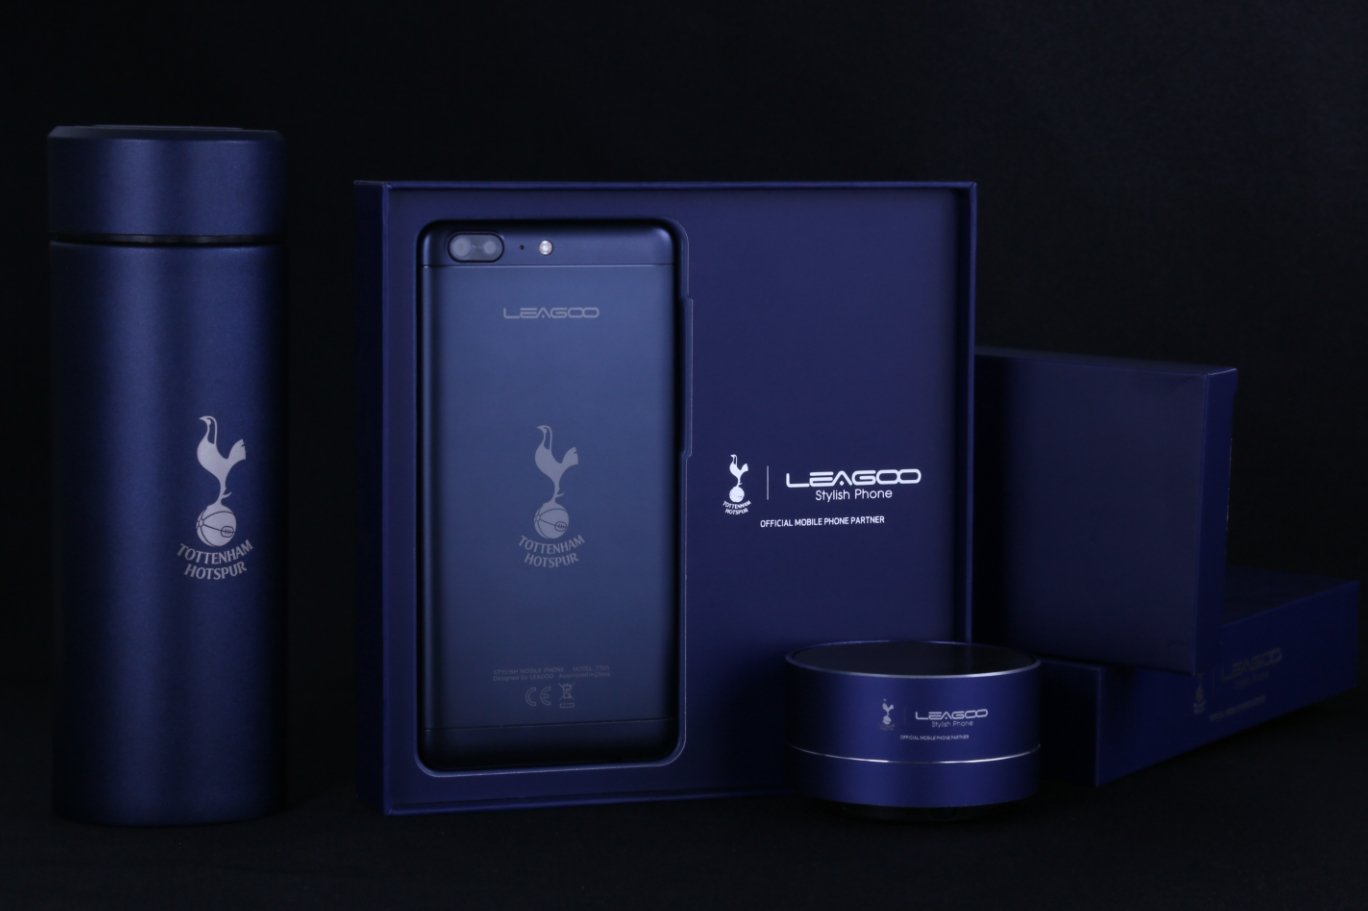 Tottenham- Hotspur-leagoo-2